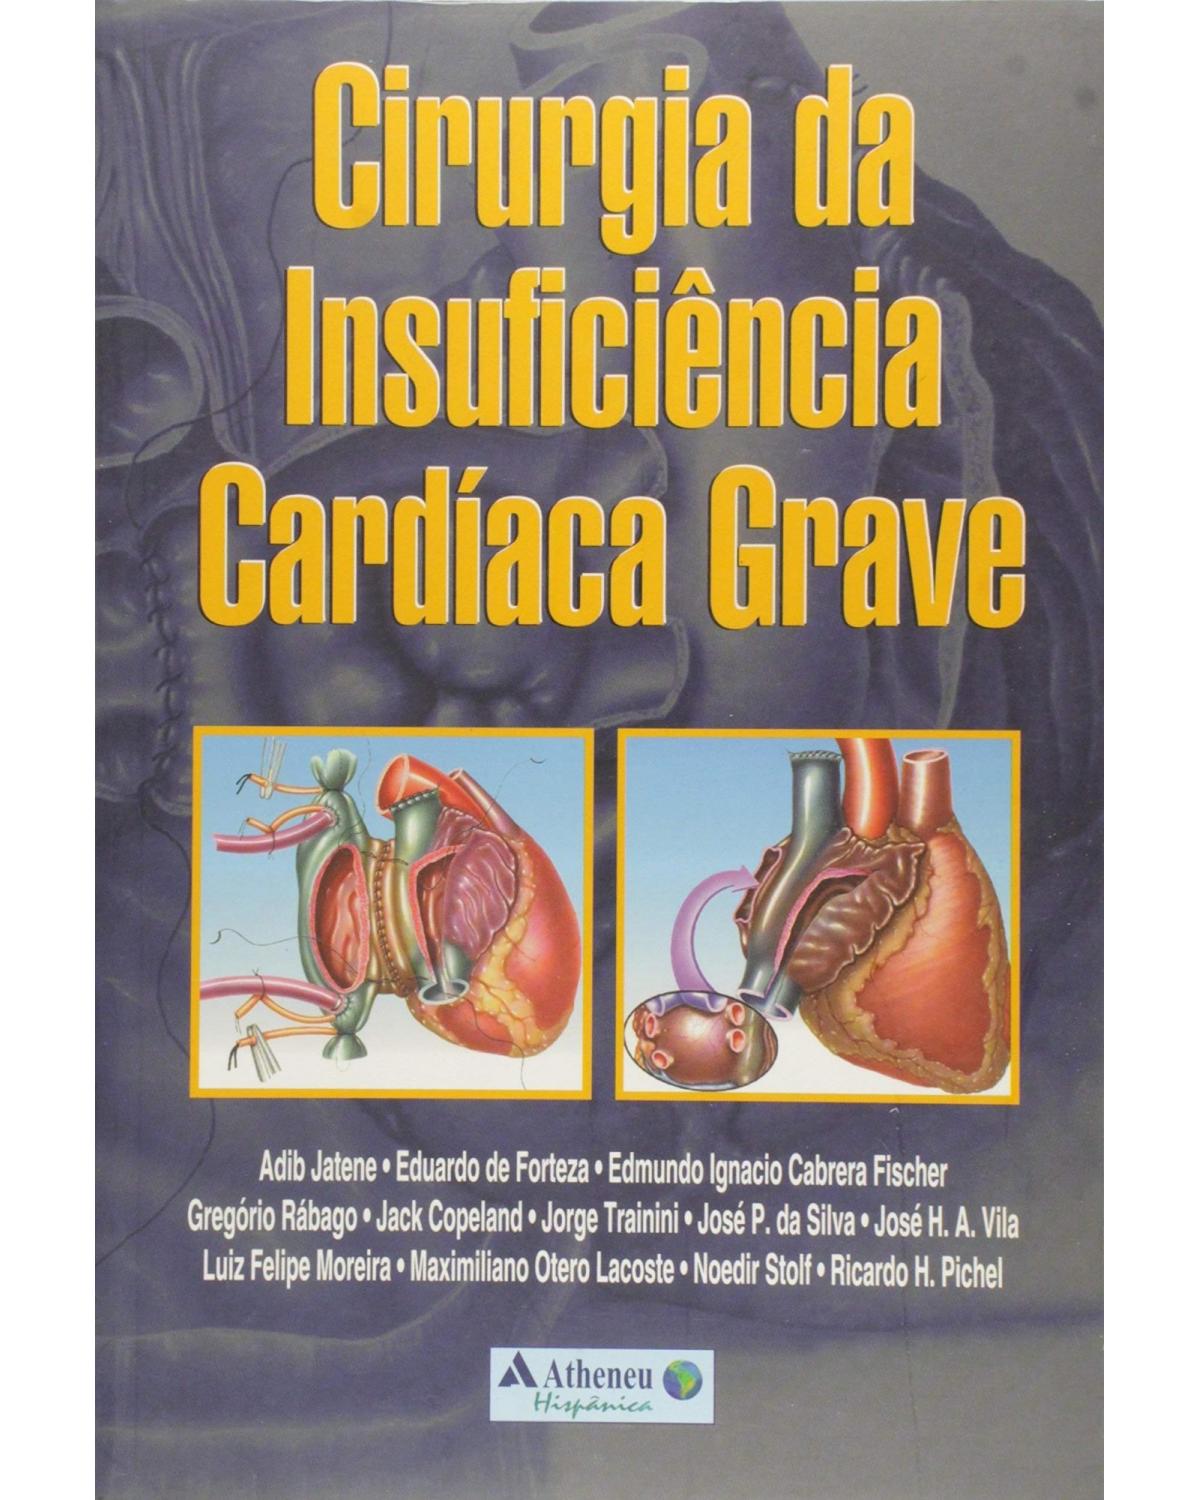 Cirurgia da insuficiência cardíaca grave - 1ª Edição | 2001